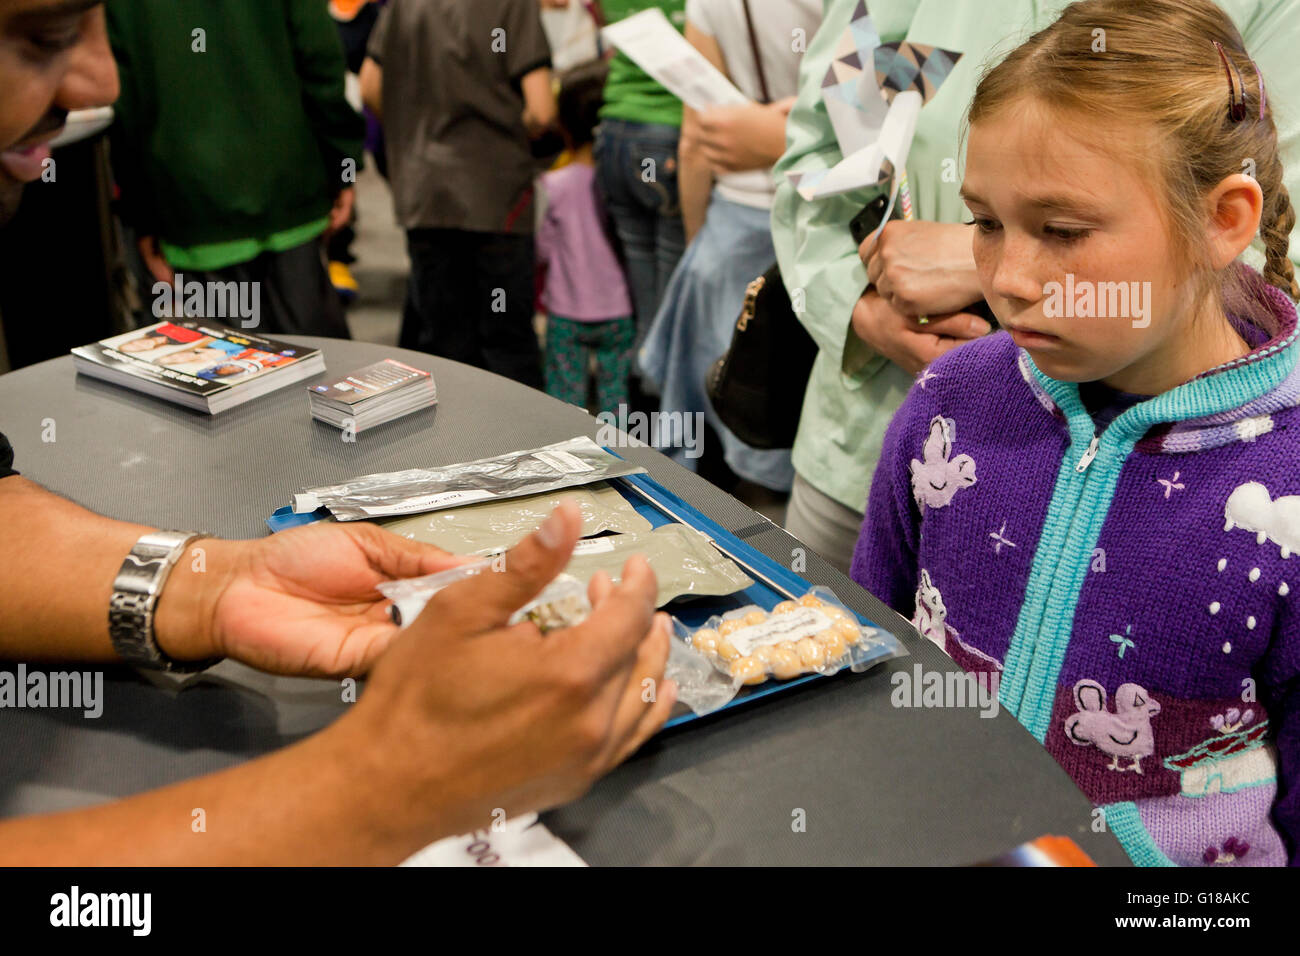 NASA-Wissenschaftler im Gespräch mit Schülerin bei einem Science fair über Raum Essen-USA Stockfoto